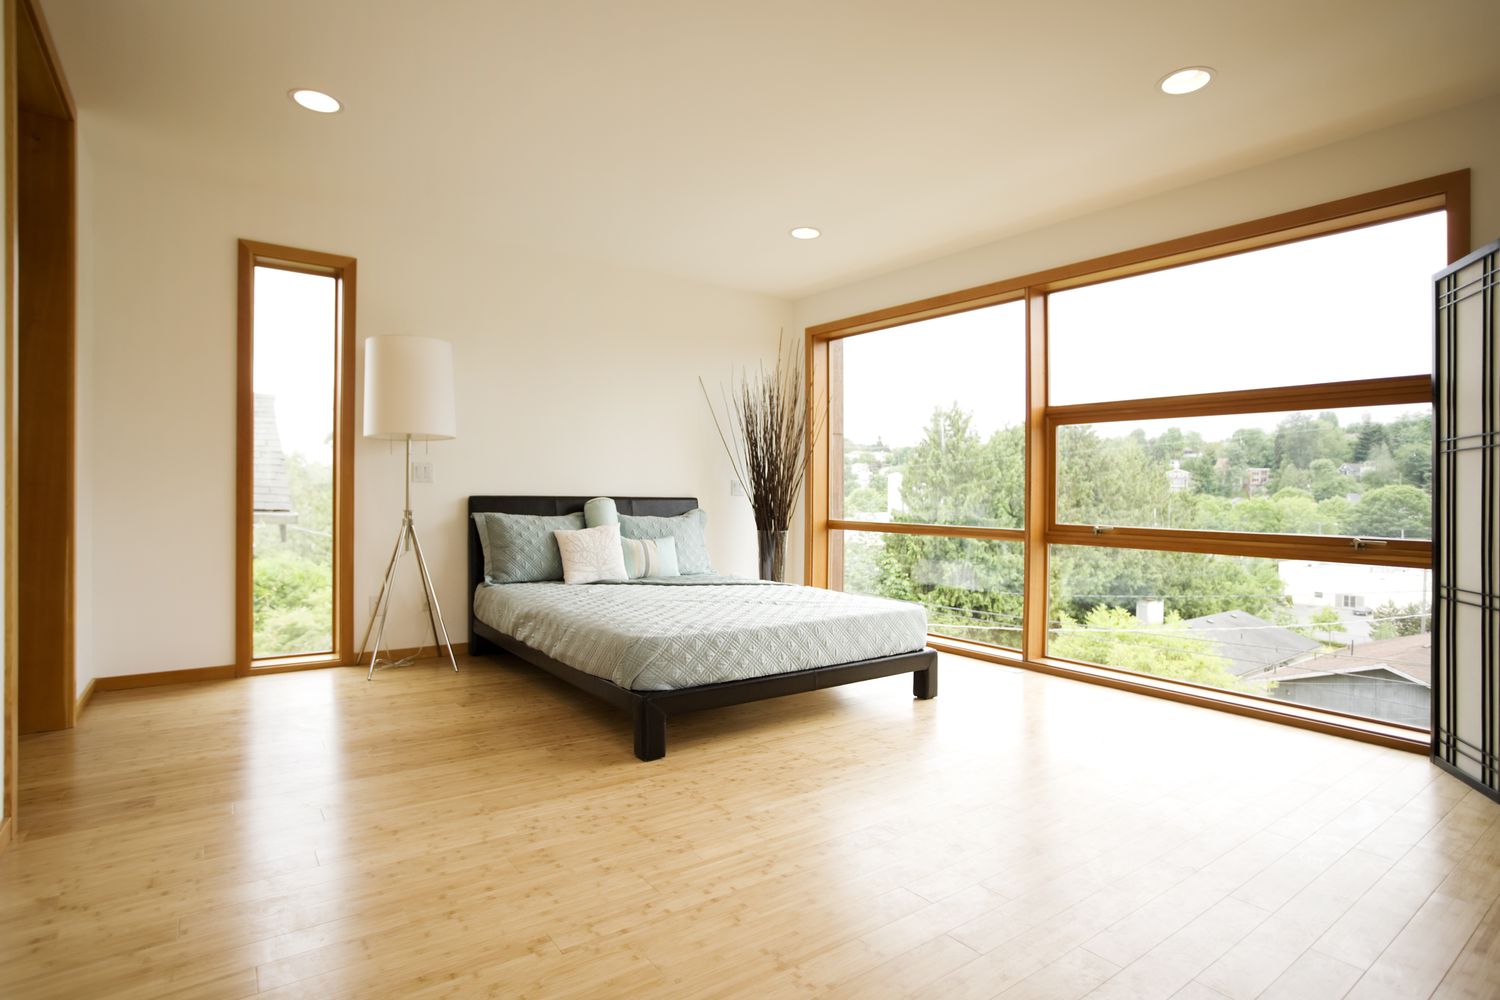 Dormitorio moderno y espacioso con suelos de bambú